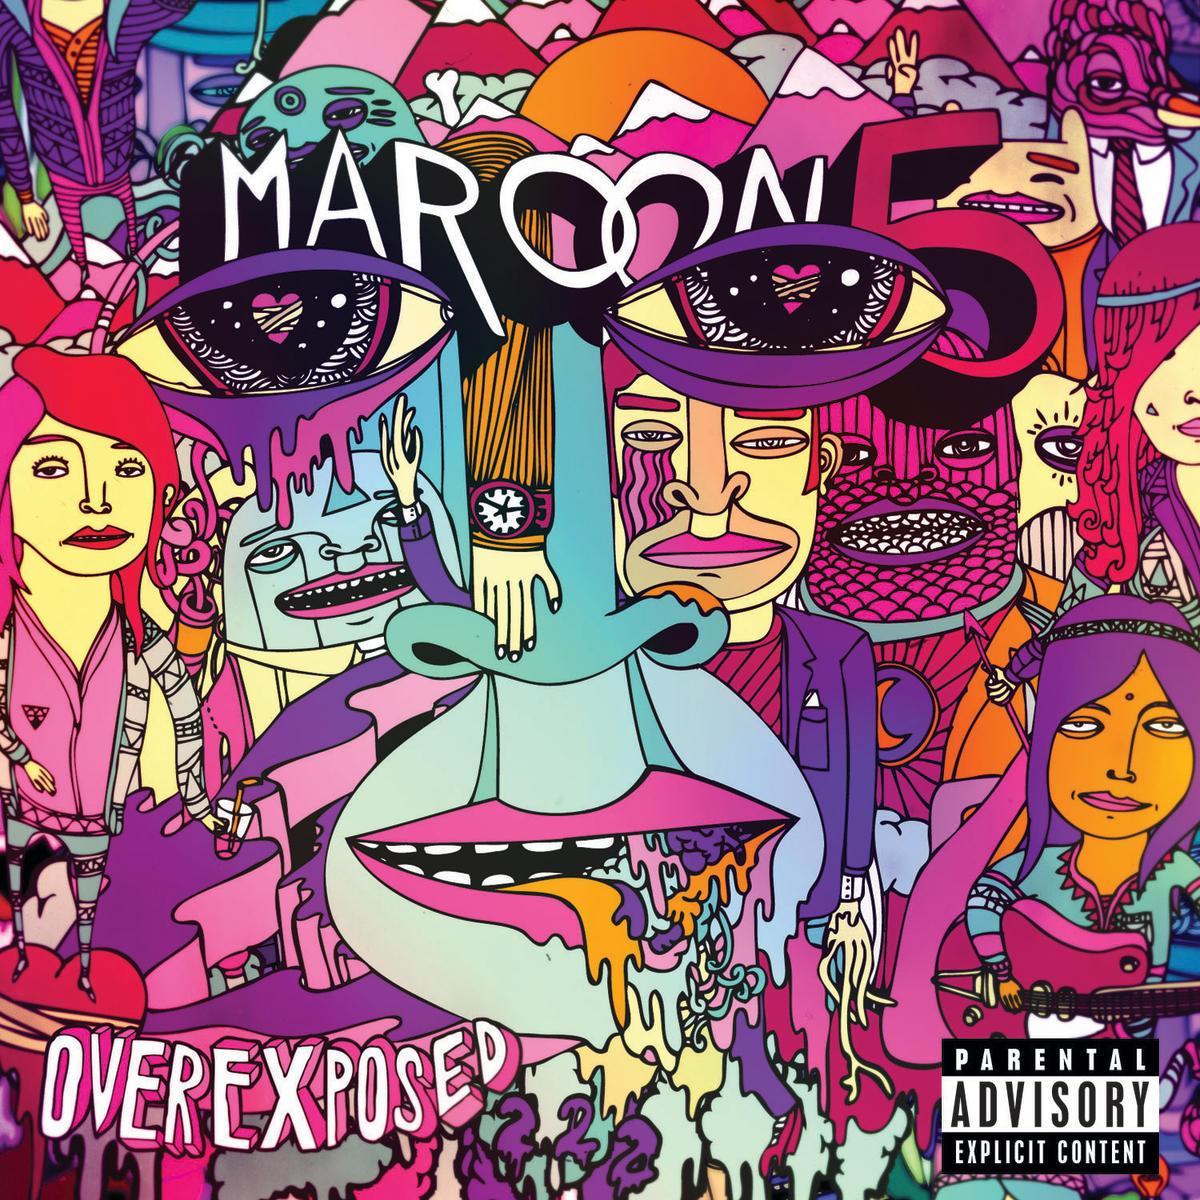 Maroon 5 - Payphone (Supreme Cuts Remix)